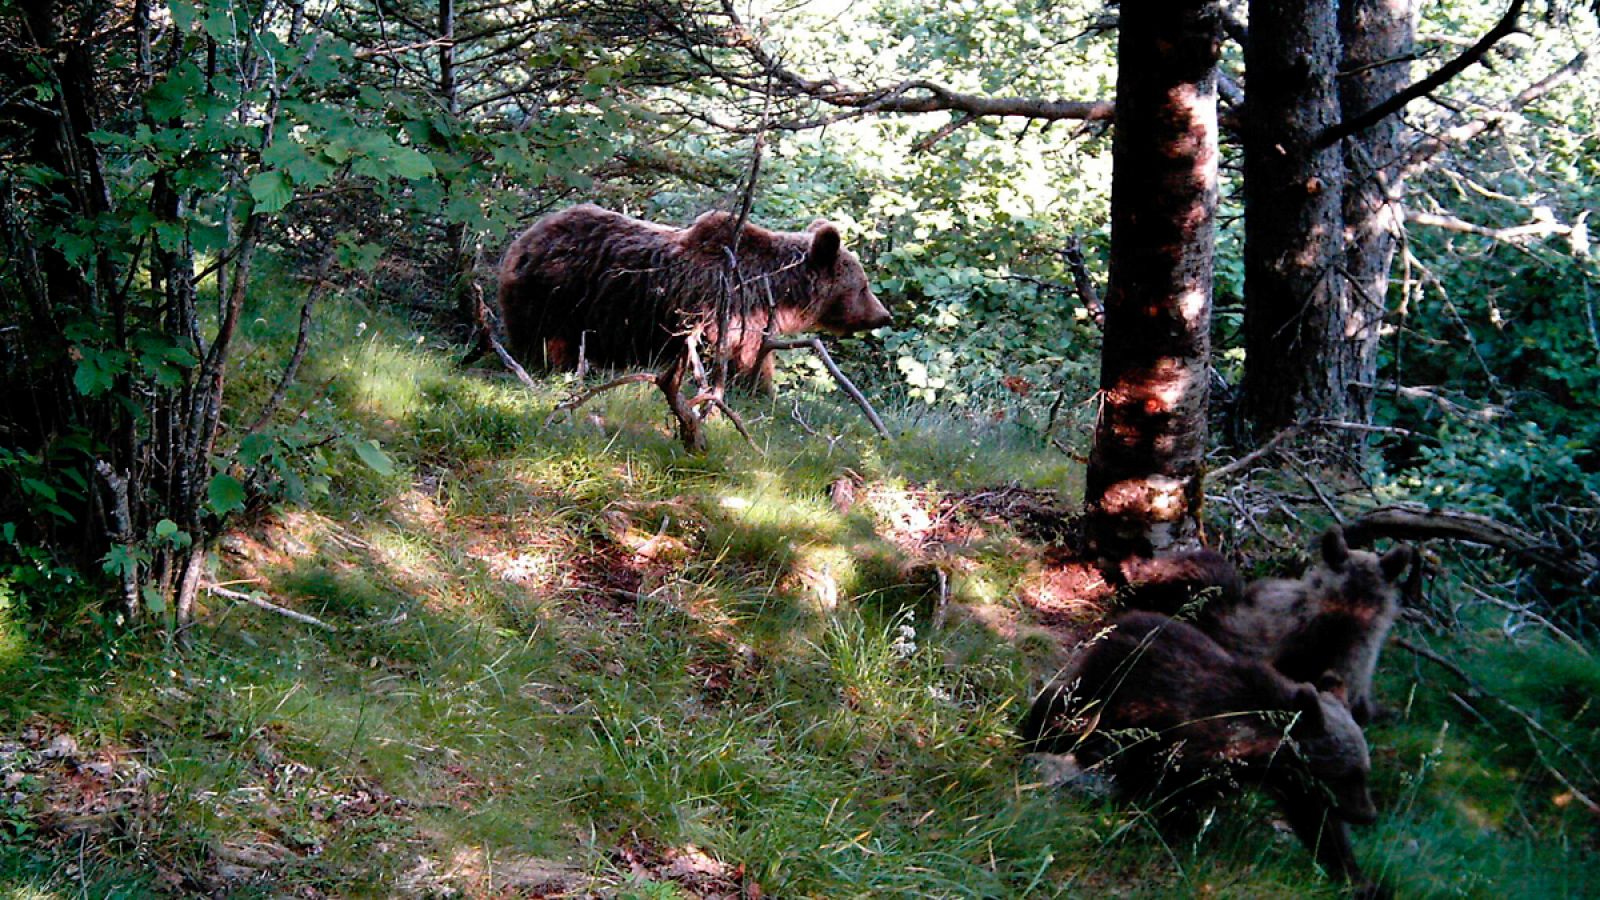 Imagen de archivo de una hembra de oso con sus cachorros, tomada en la Vall d'Àneu (Lleida).